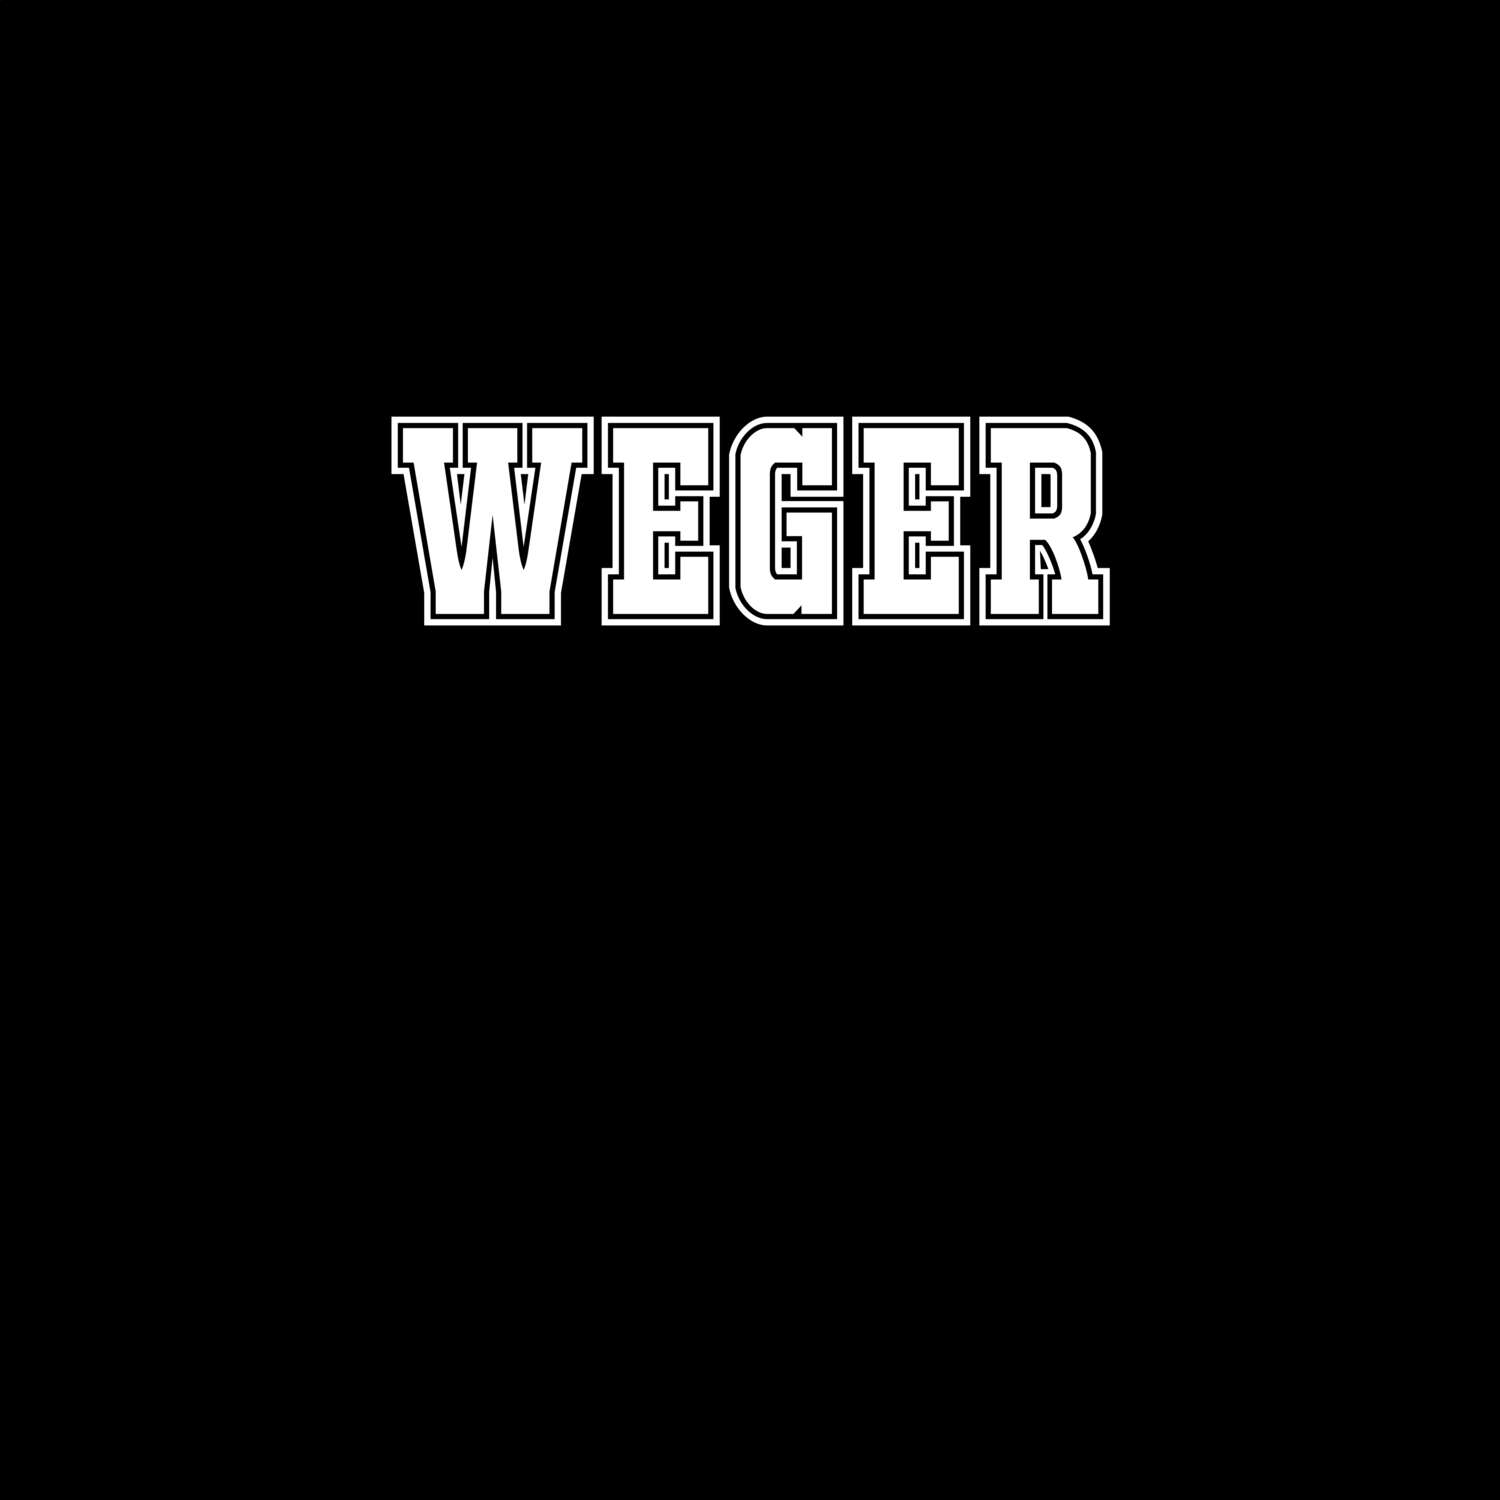 Weger T-Shirt »Classic«